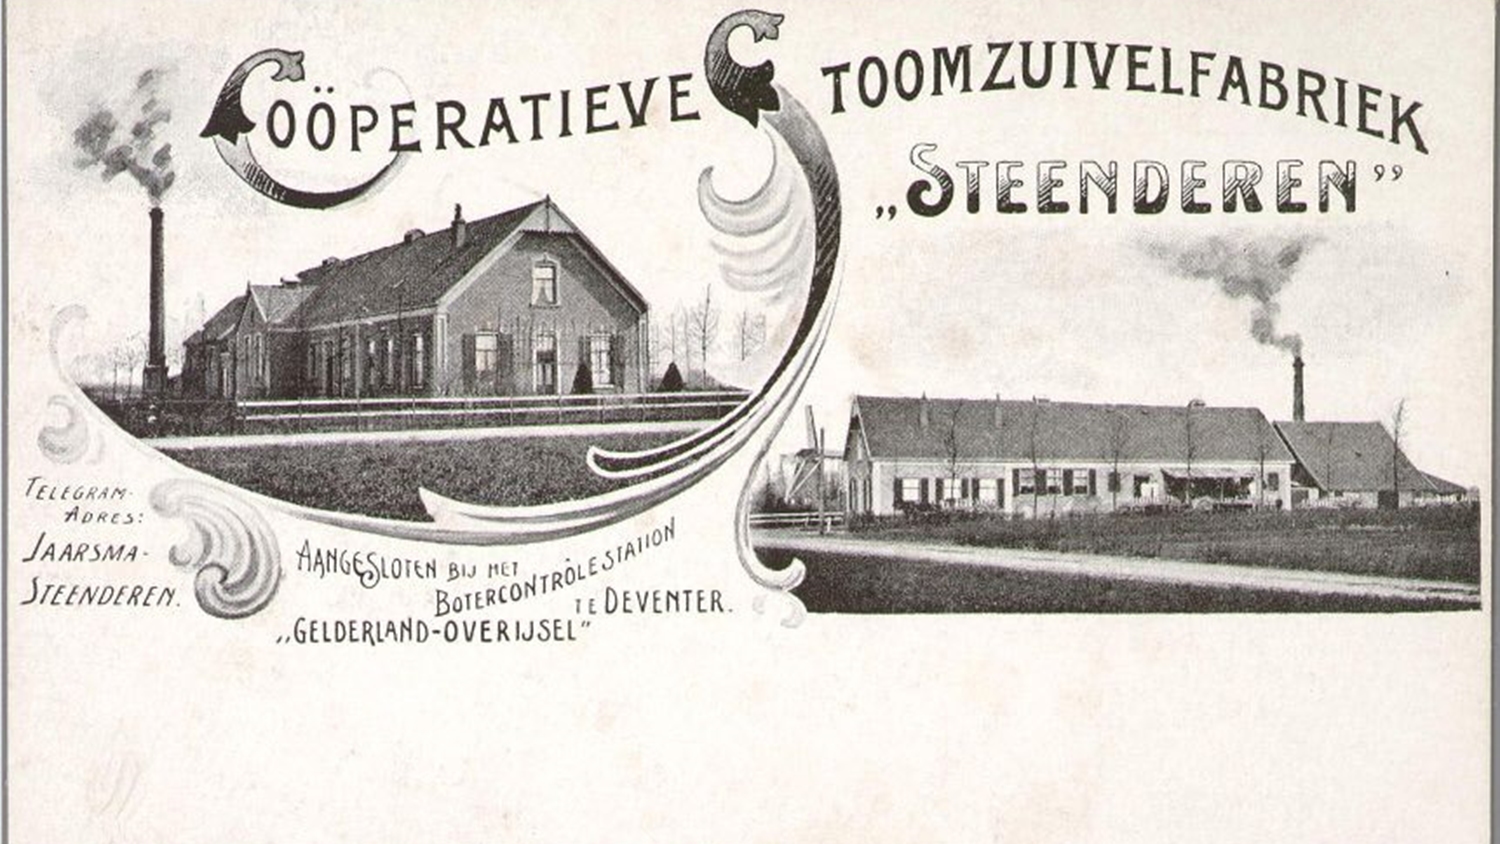 De start van onze fabriek in 1898